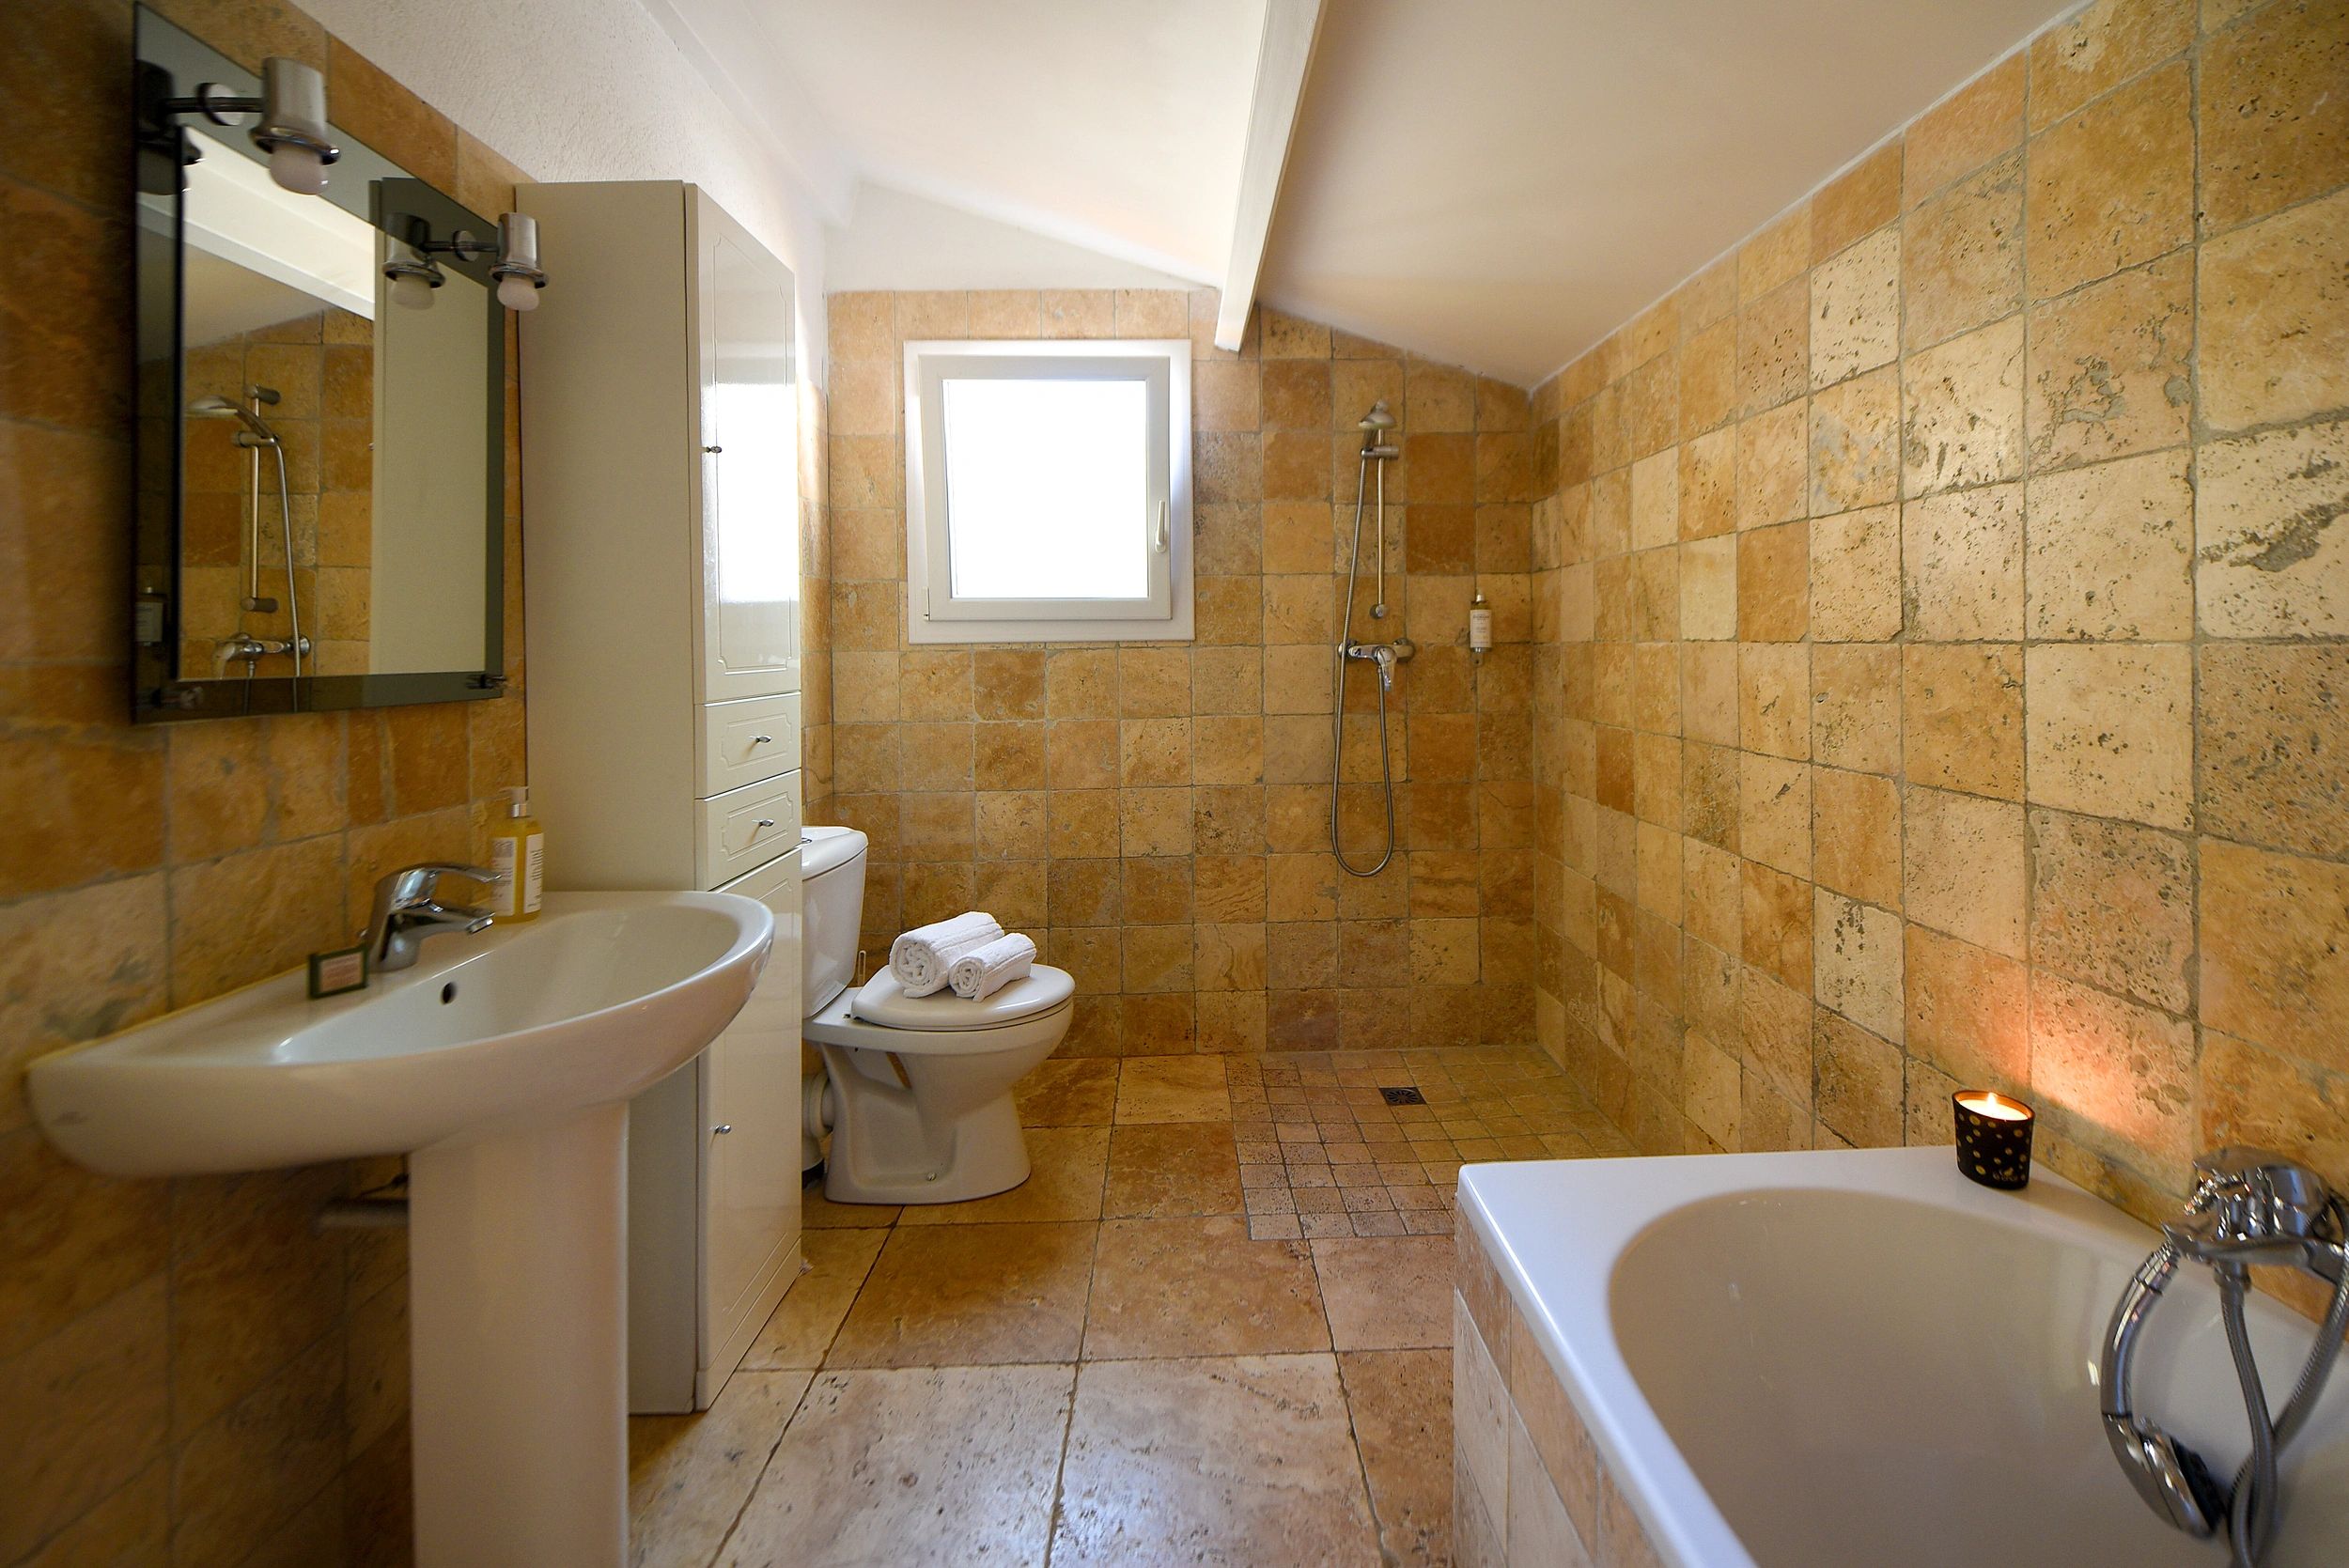 Grande villa in affitto a Porto-Vecchio con bagno spazioso